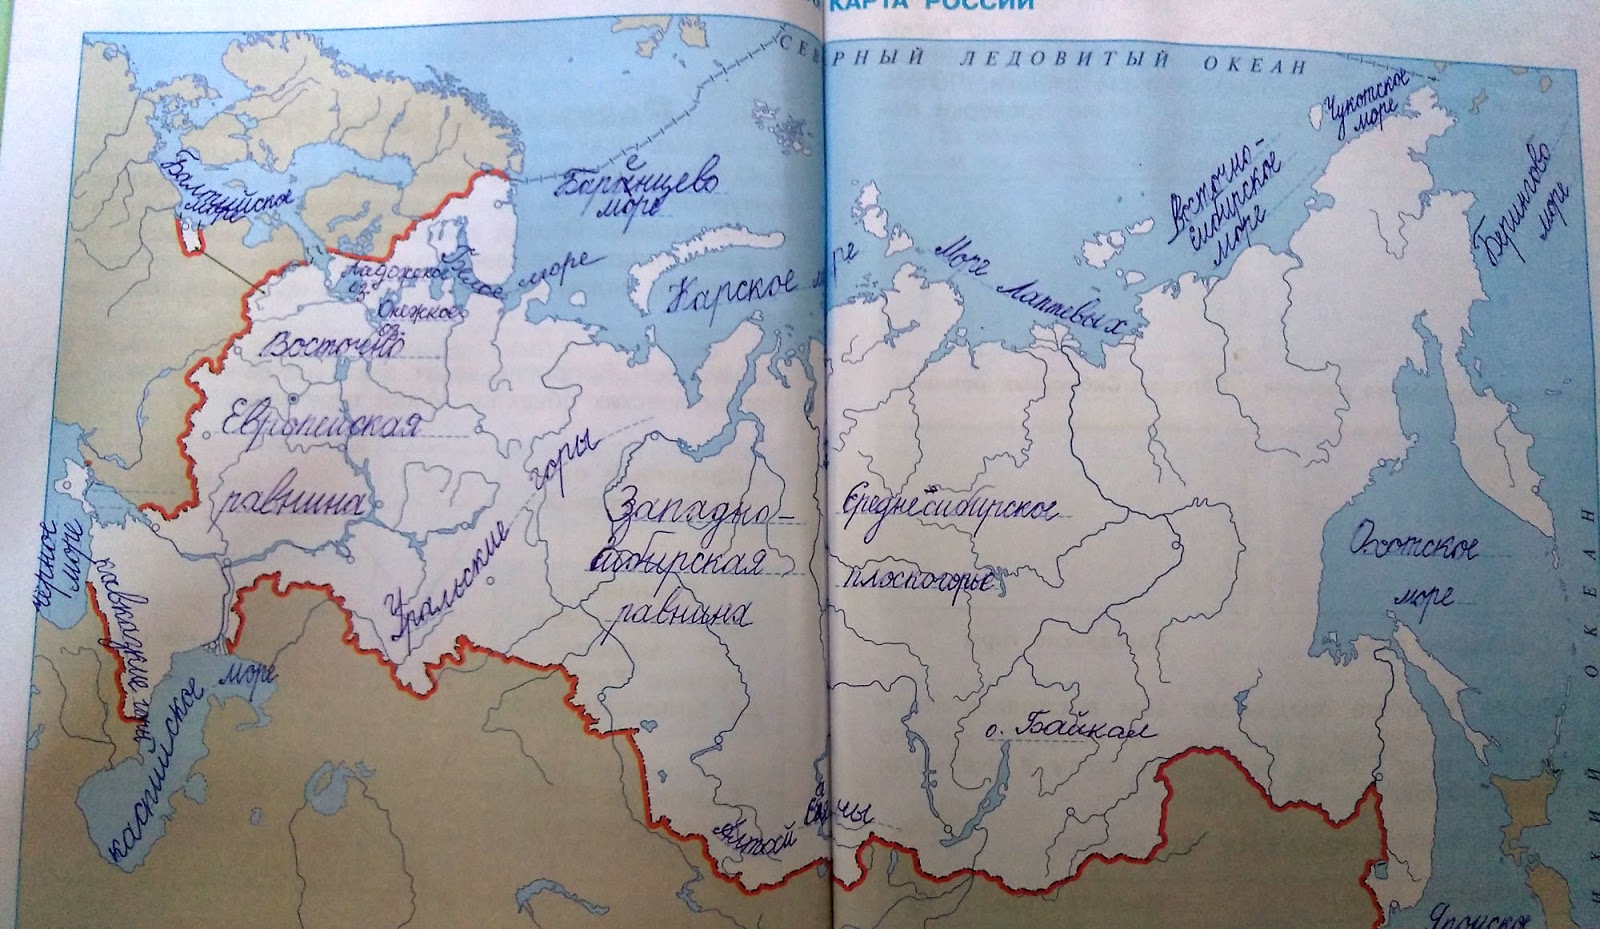 Контурная карта России